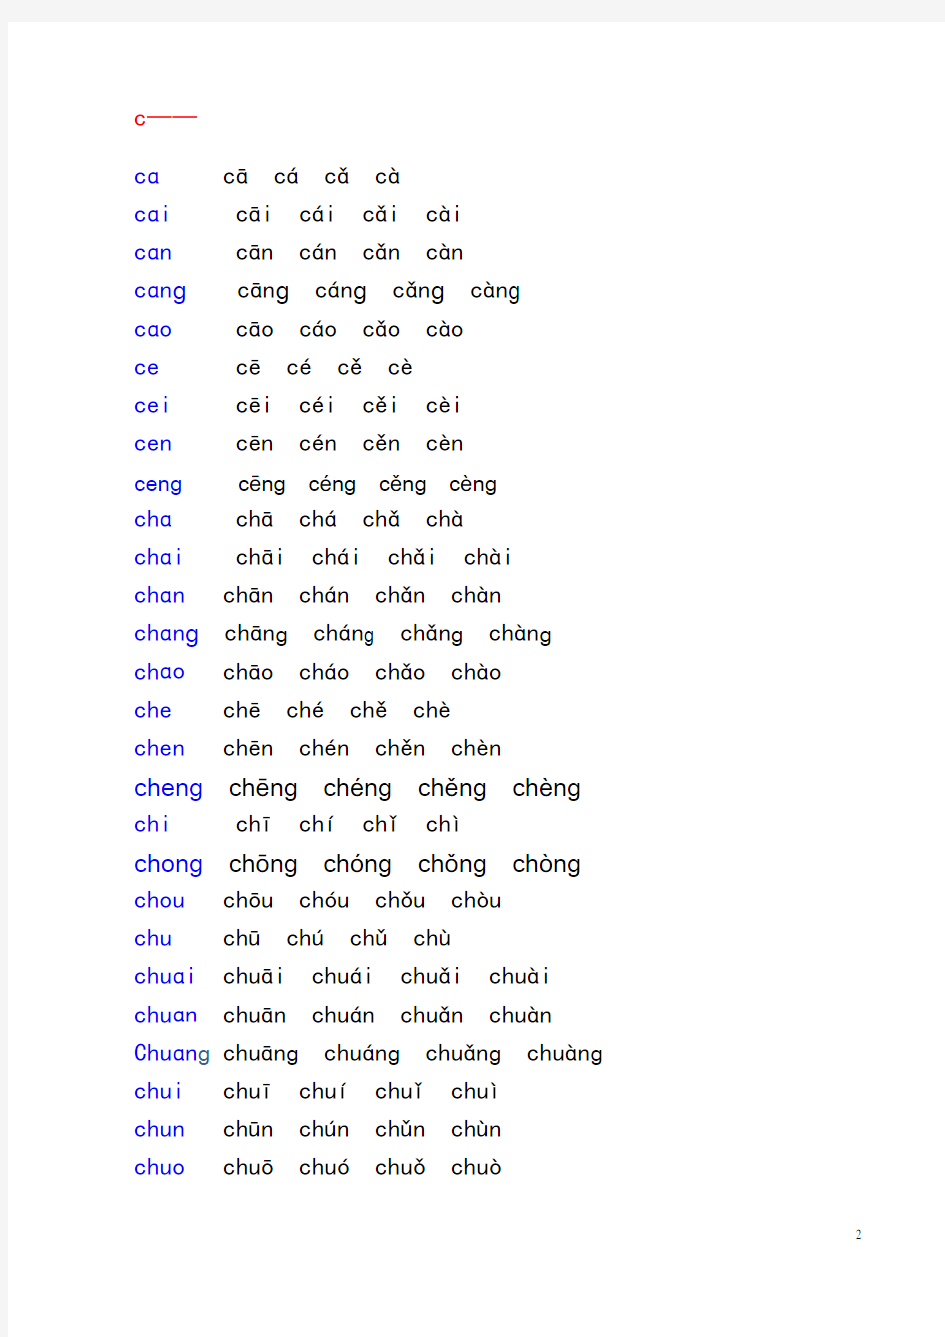 汉语拼音音节表(带声调音节)